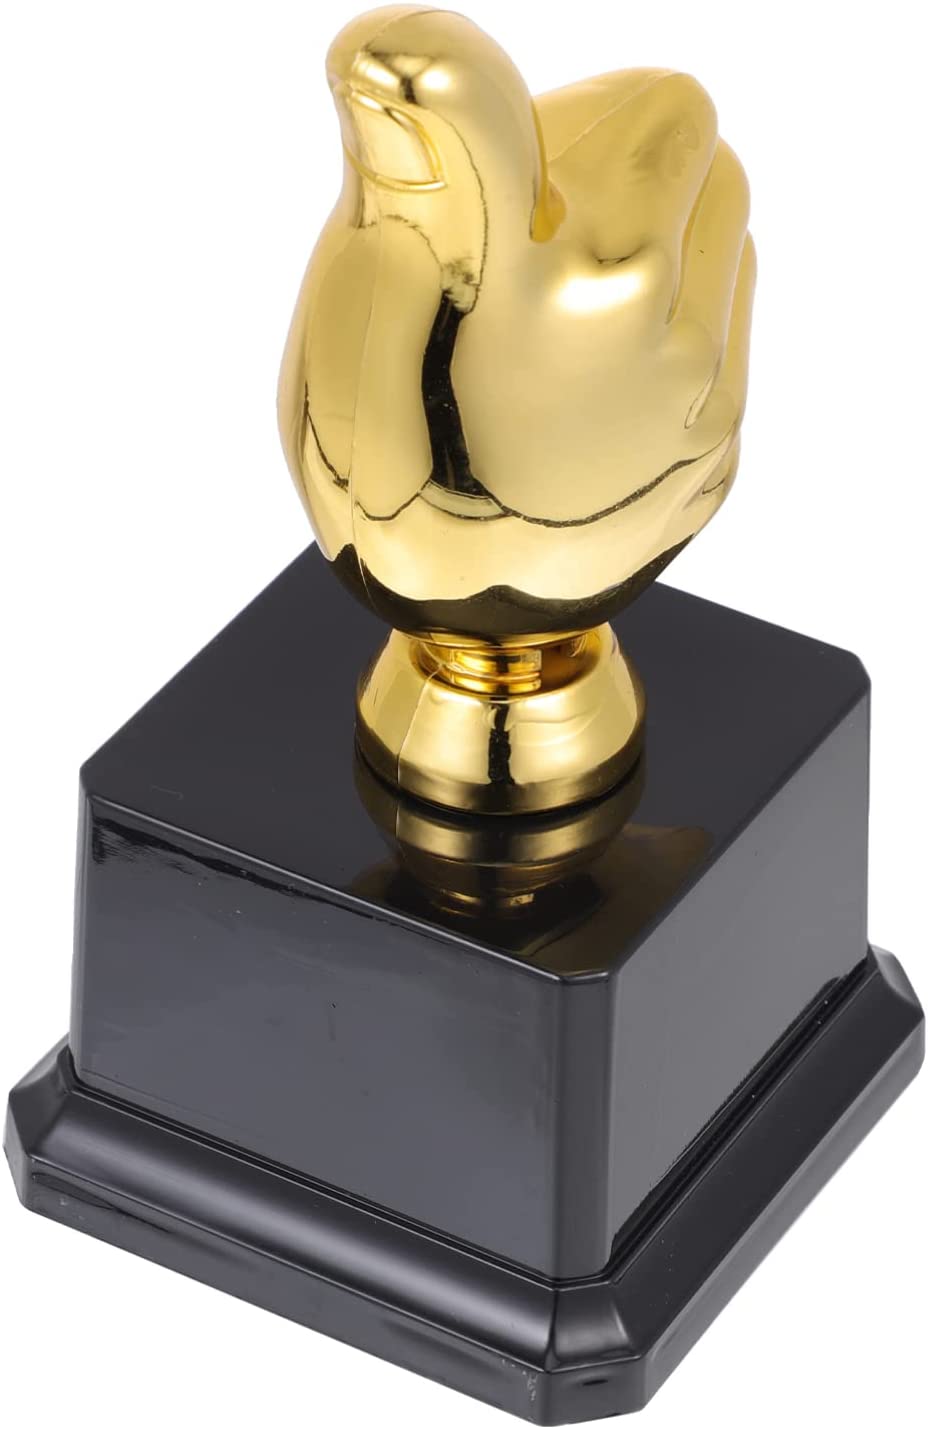 BESPORTBLE Troféu Taça Thumbs up Troféus de Prêmio Prêmio Troféus de Ouro Troféus Primeiro Lugar Vencedor Rofy Copos de Rofy 